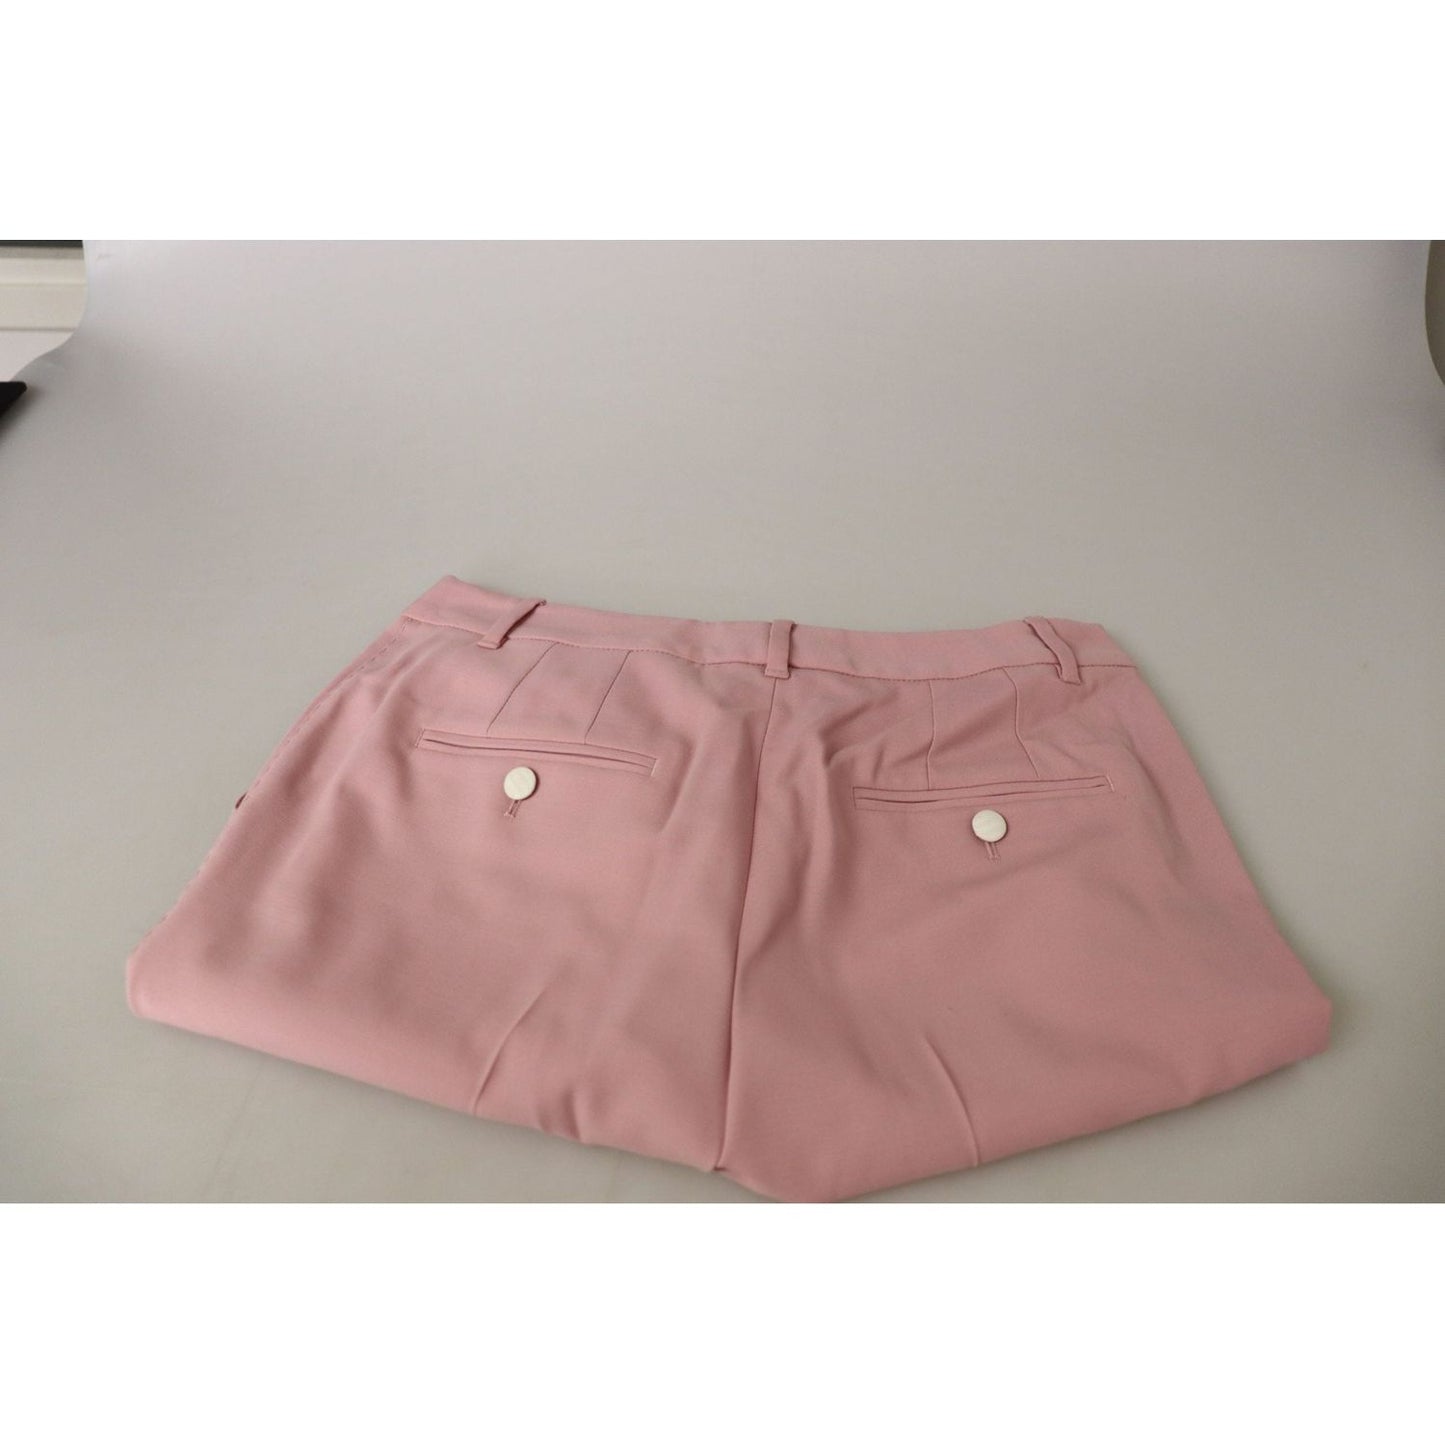 Dolce & Gabbana Chic MidWaist Virgin Wool Pink Pants pink-mid-waist-straight-leg-trouser-pants